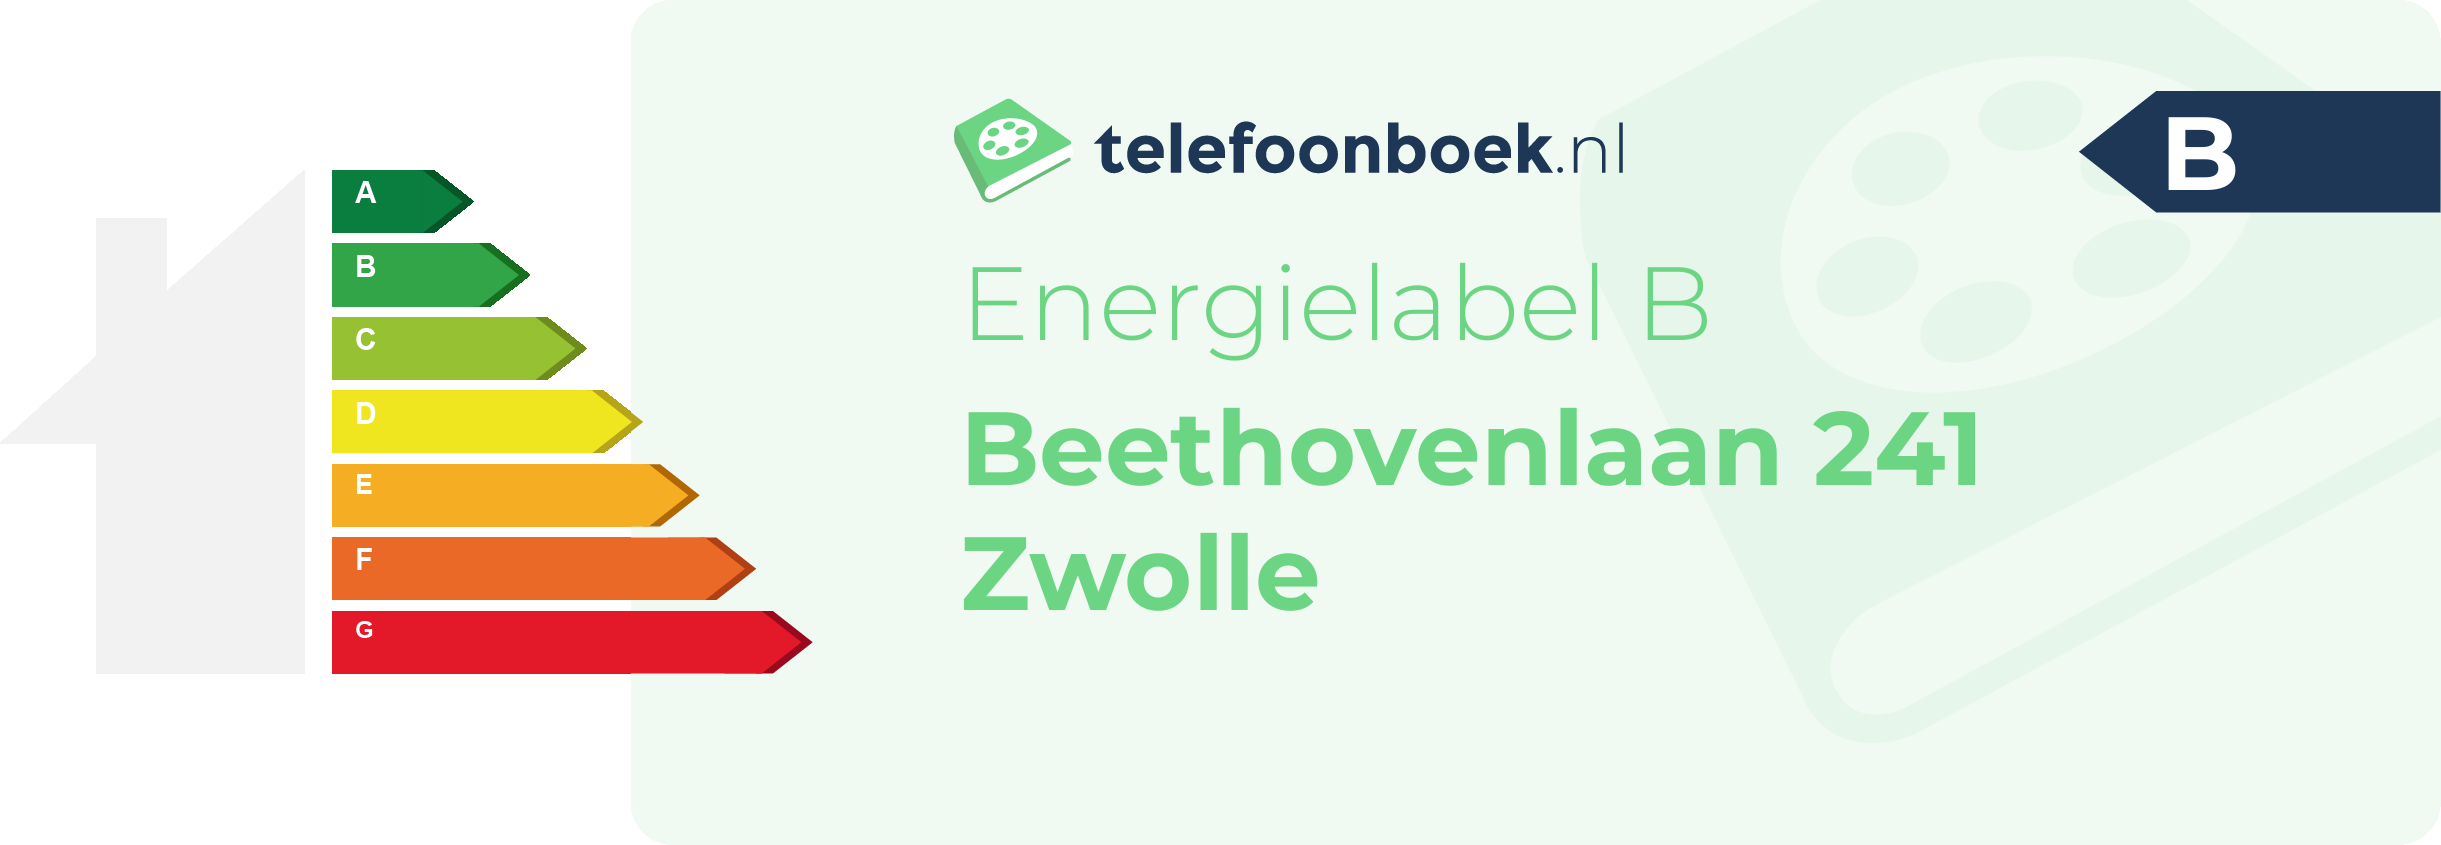 Energielabel Beethovenlaan 241 Zwolle